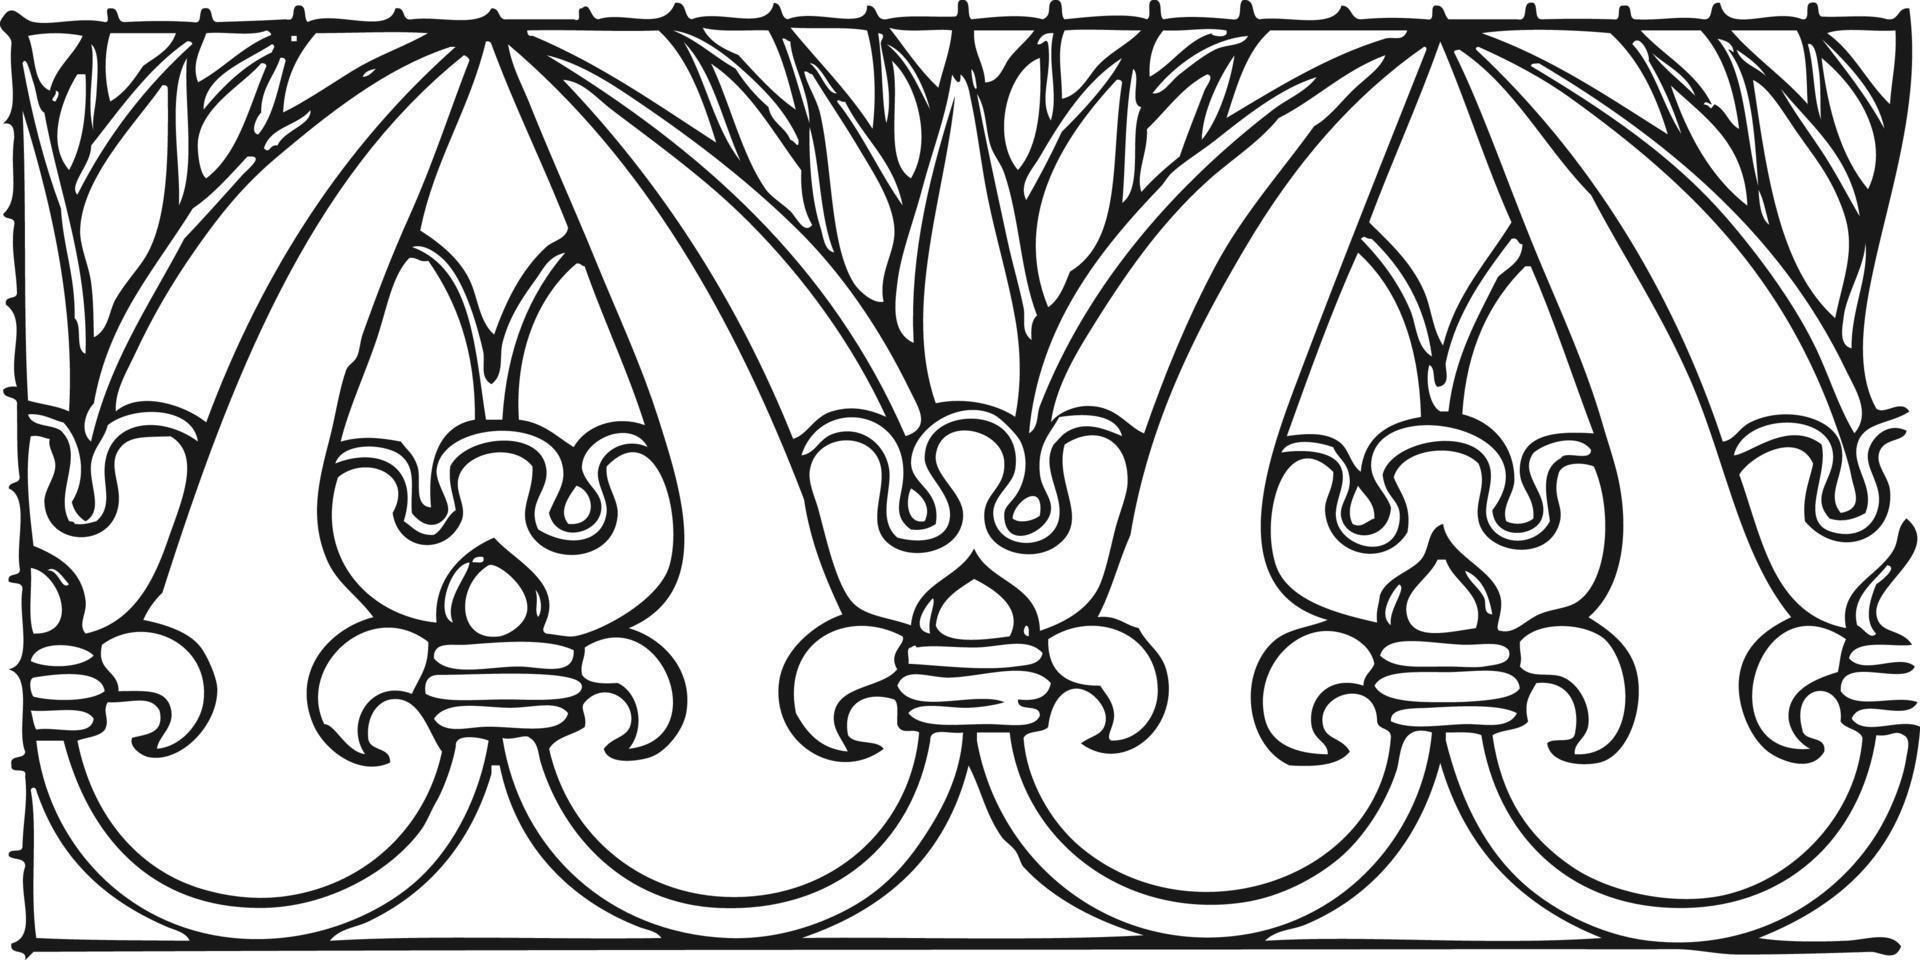 imprimir desenho vetorial de molduras ornamentais elementos ornamentados decorativos emblemas vintage, rótulos e molduras vetor